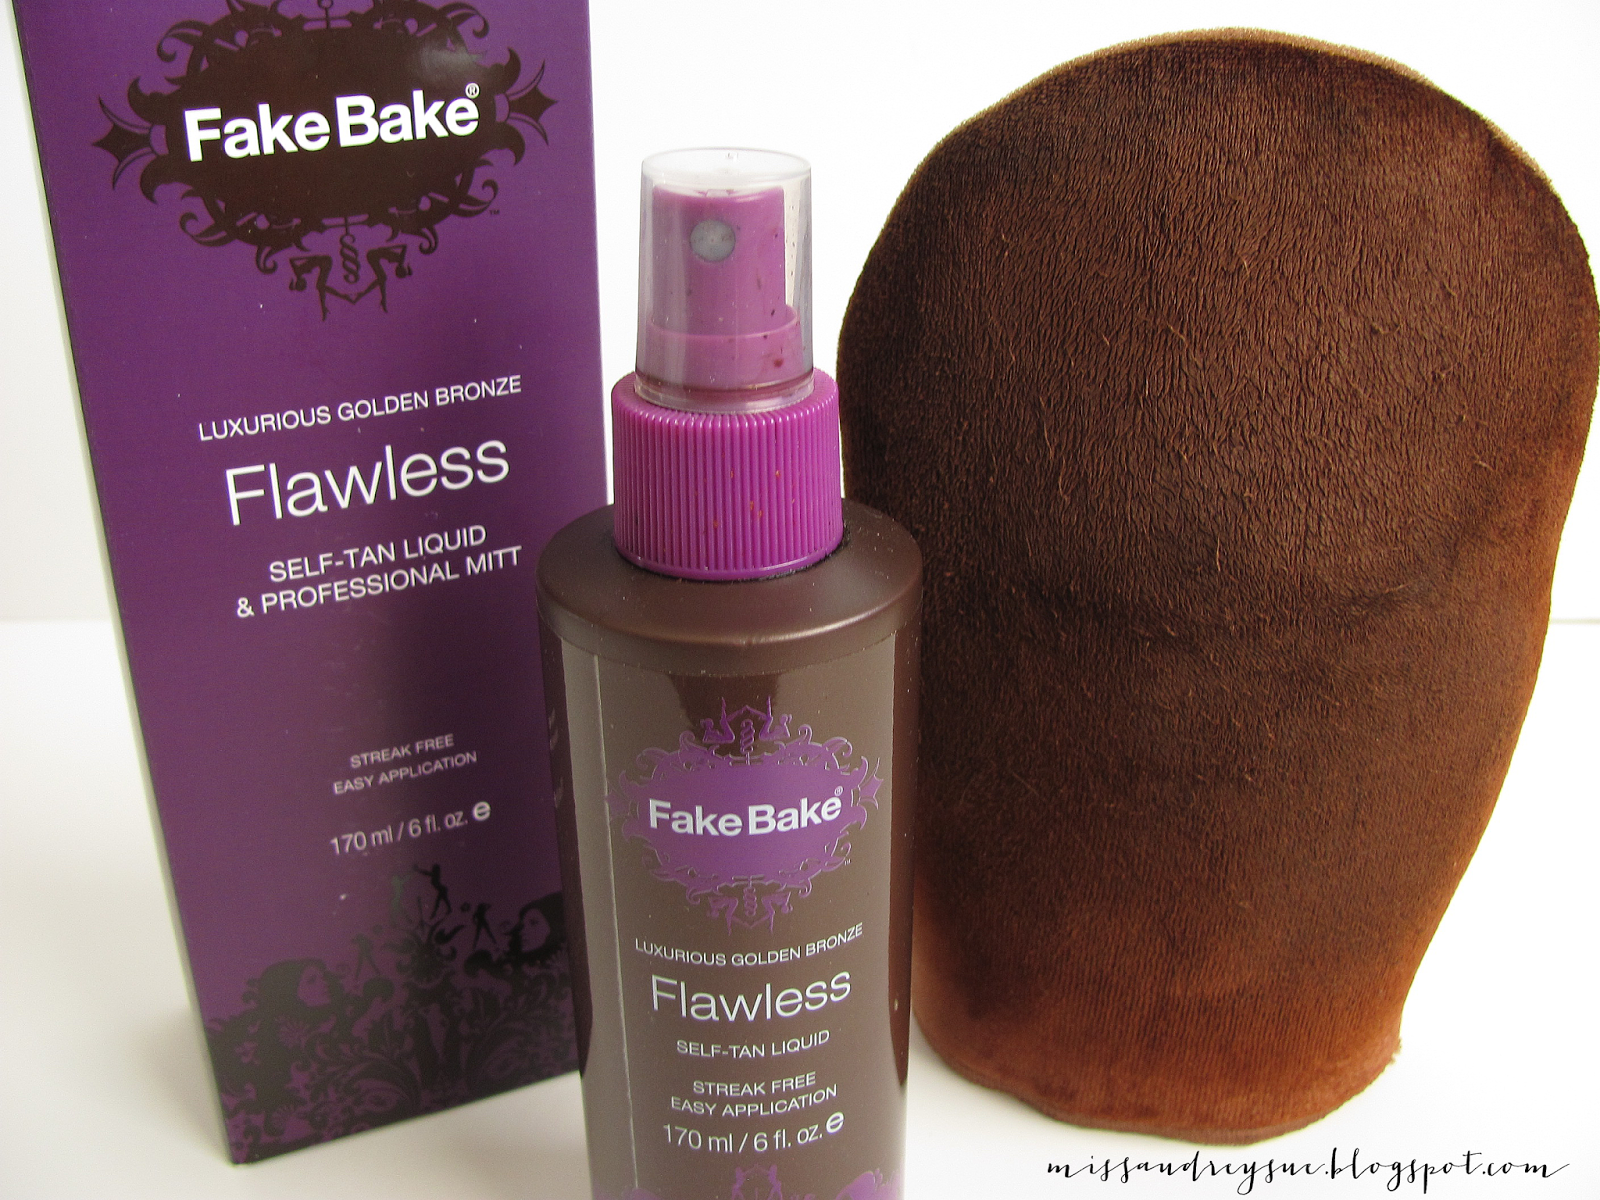 Fake Bake Flawless 170 Ml/6 fl oz - Set of 2